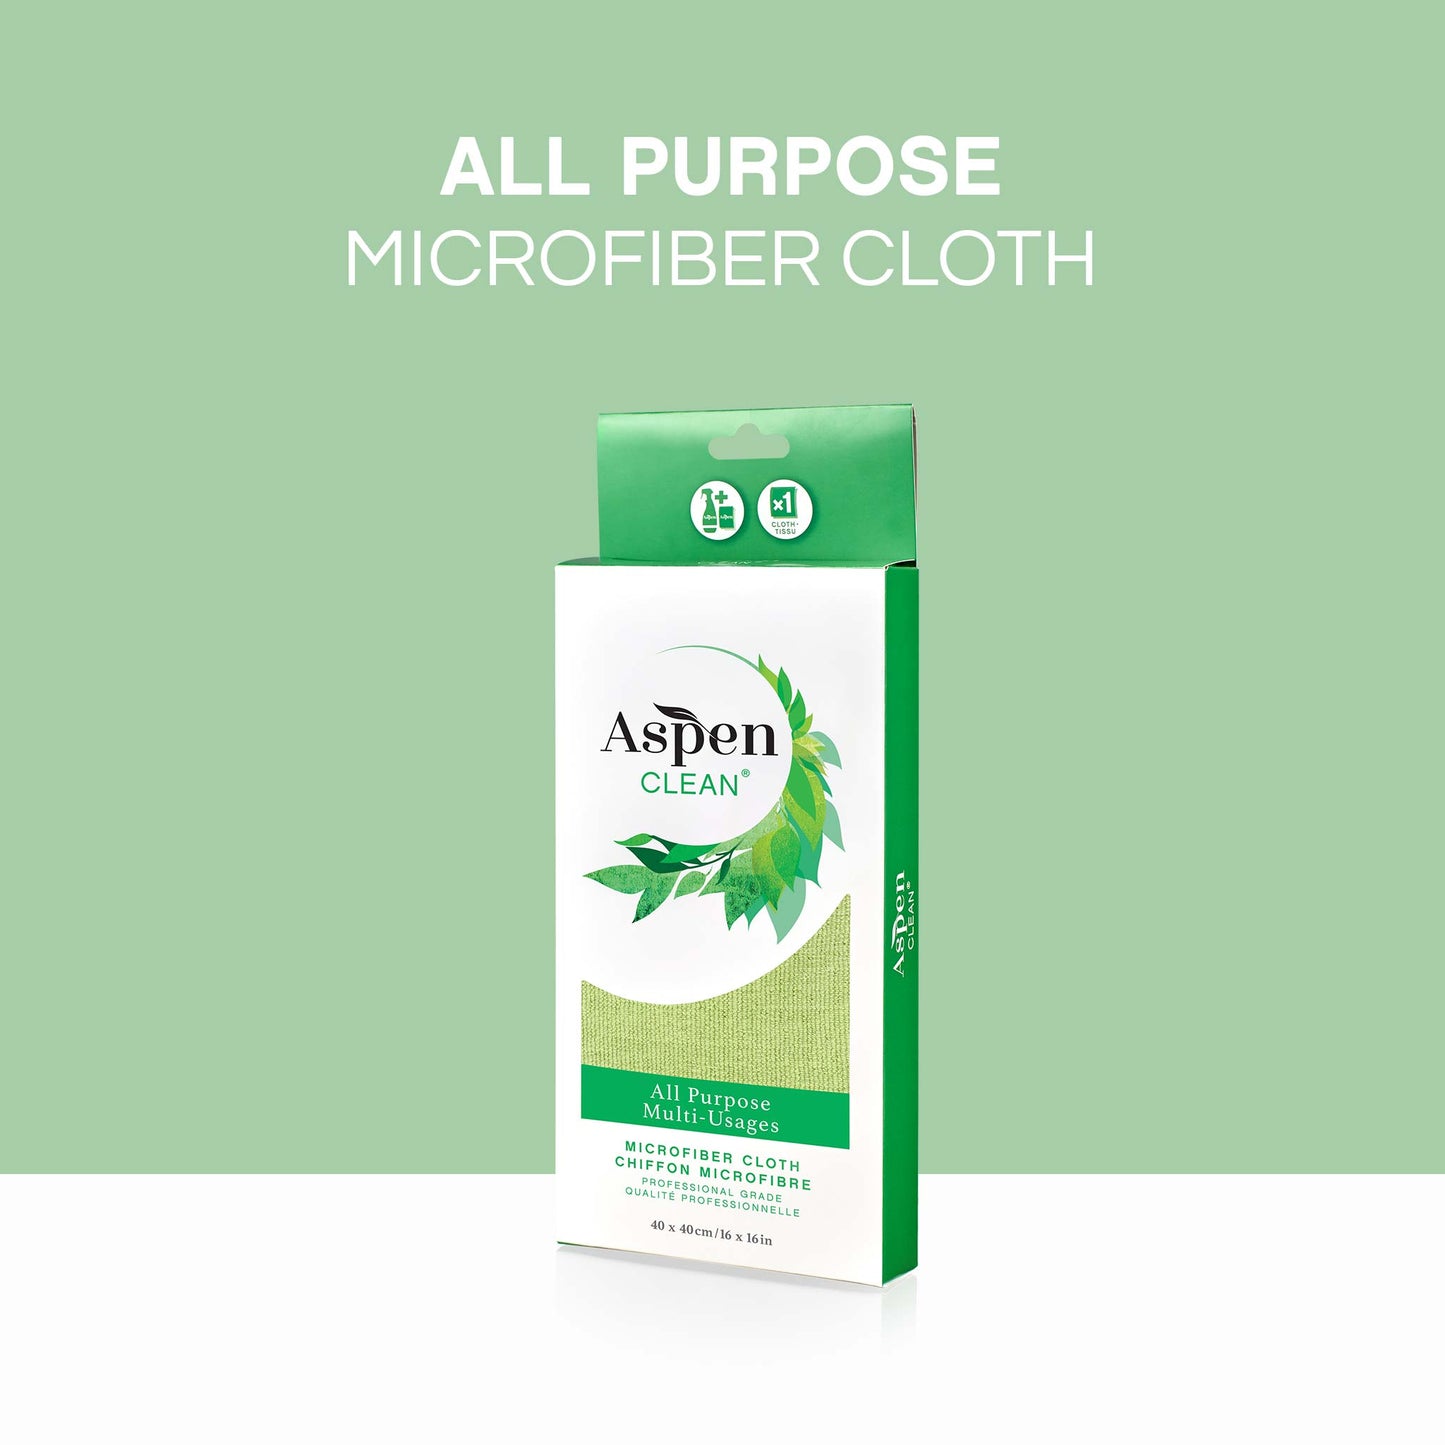 All purpose Microfiber Cloth